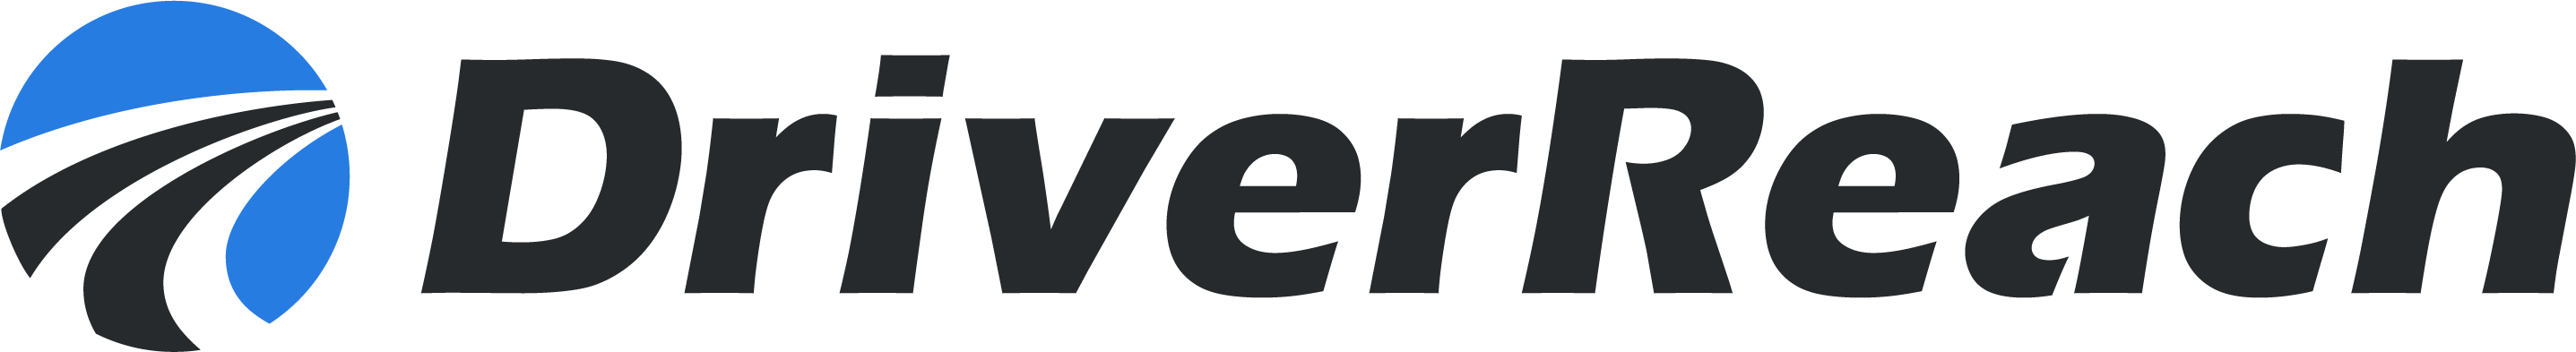 DriverReach logo